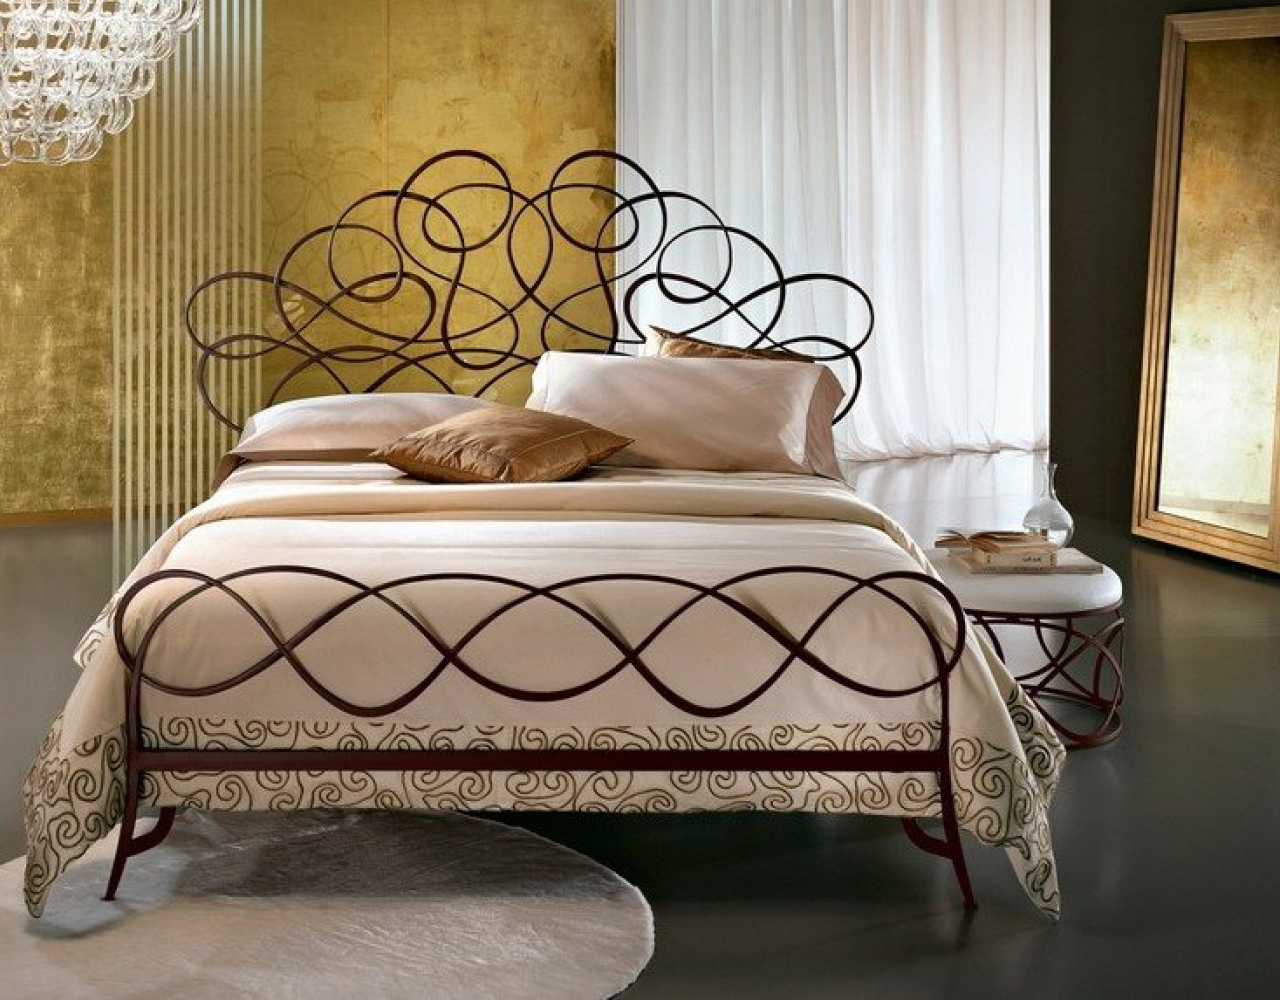 Кованая кровать с витым орнаментом КРВ-031